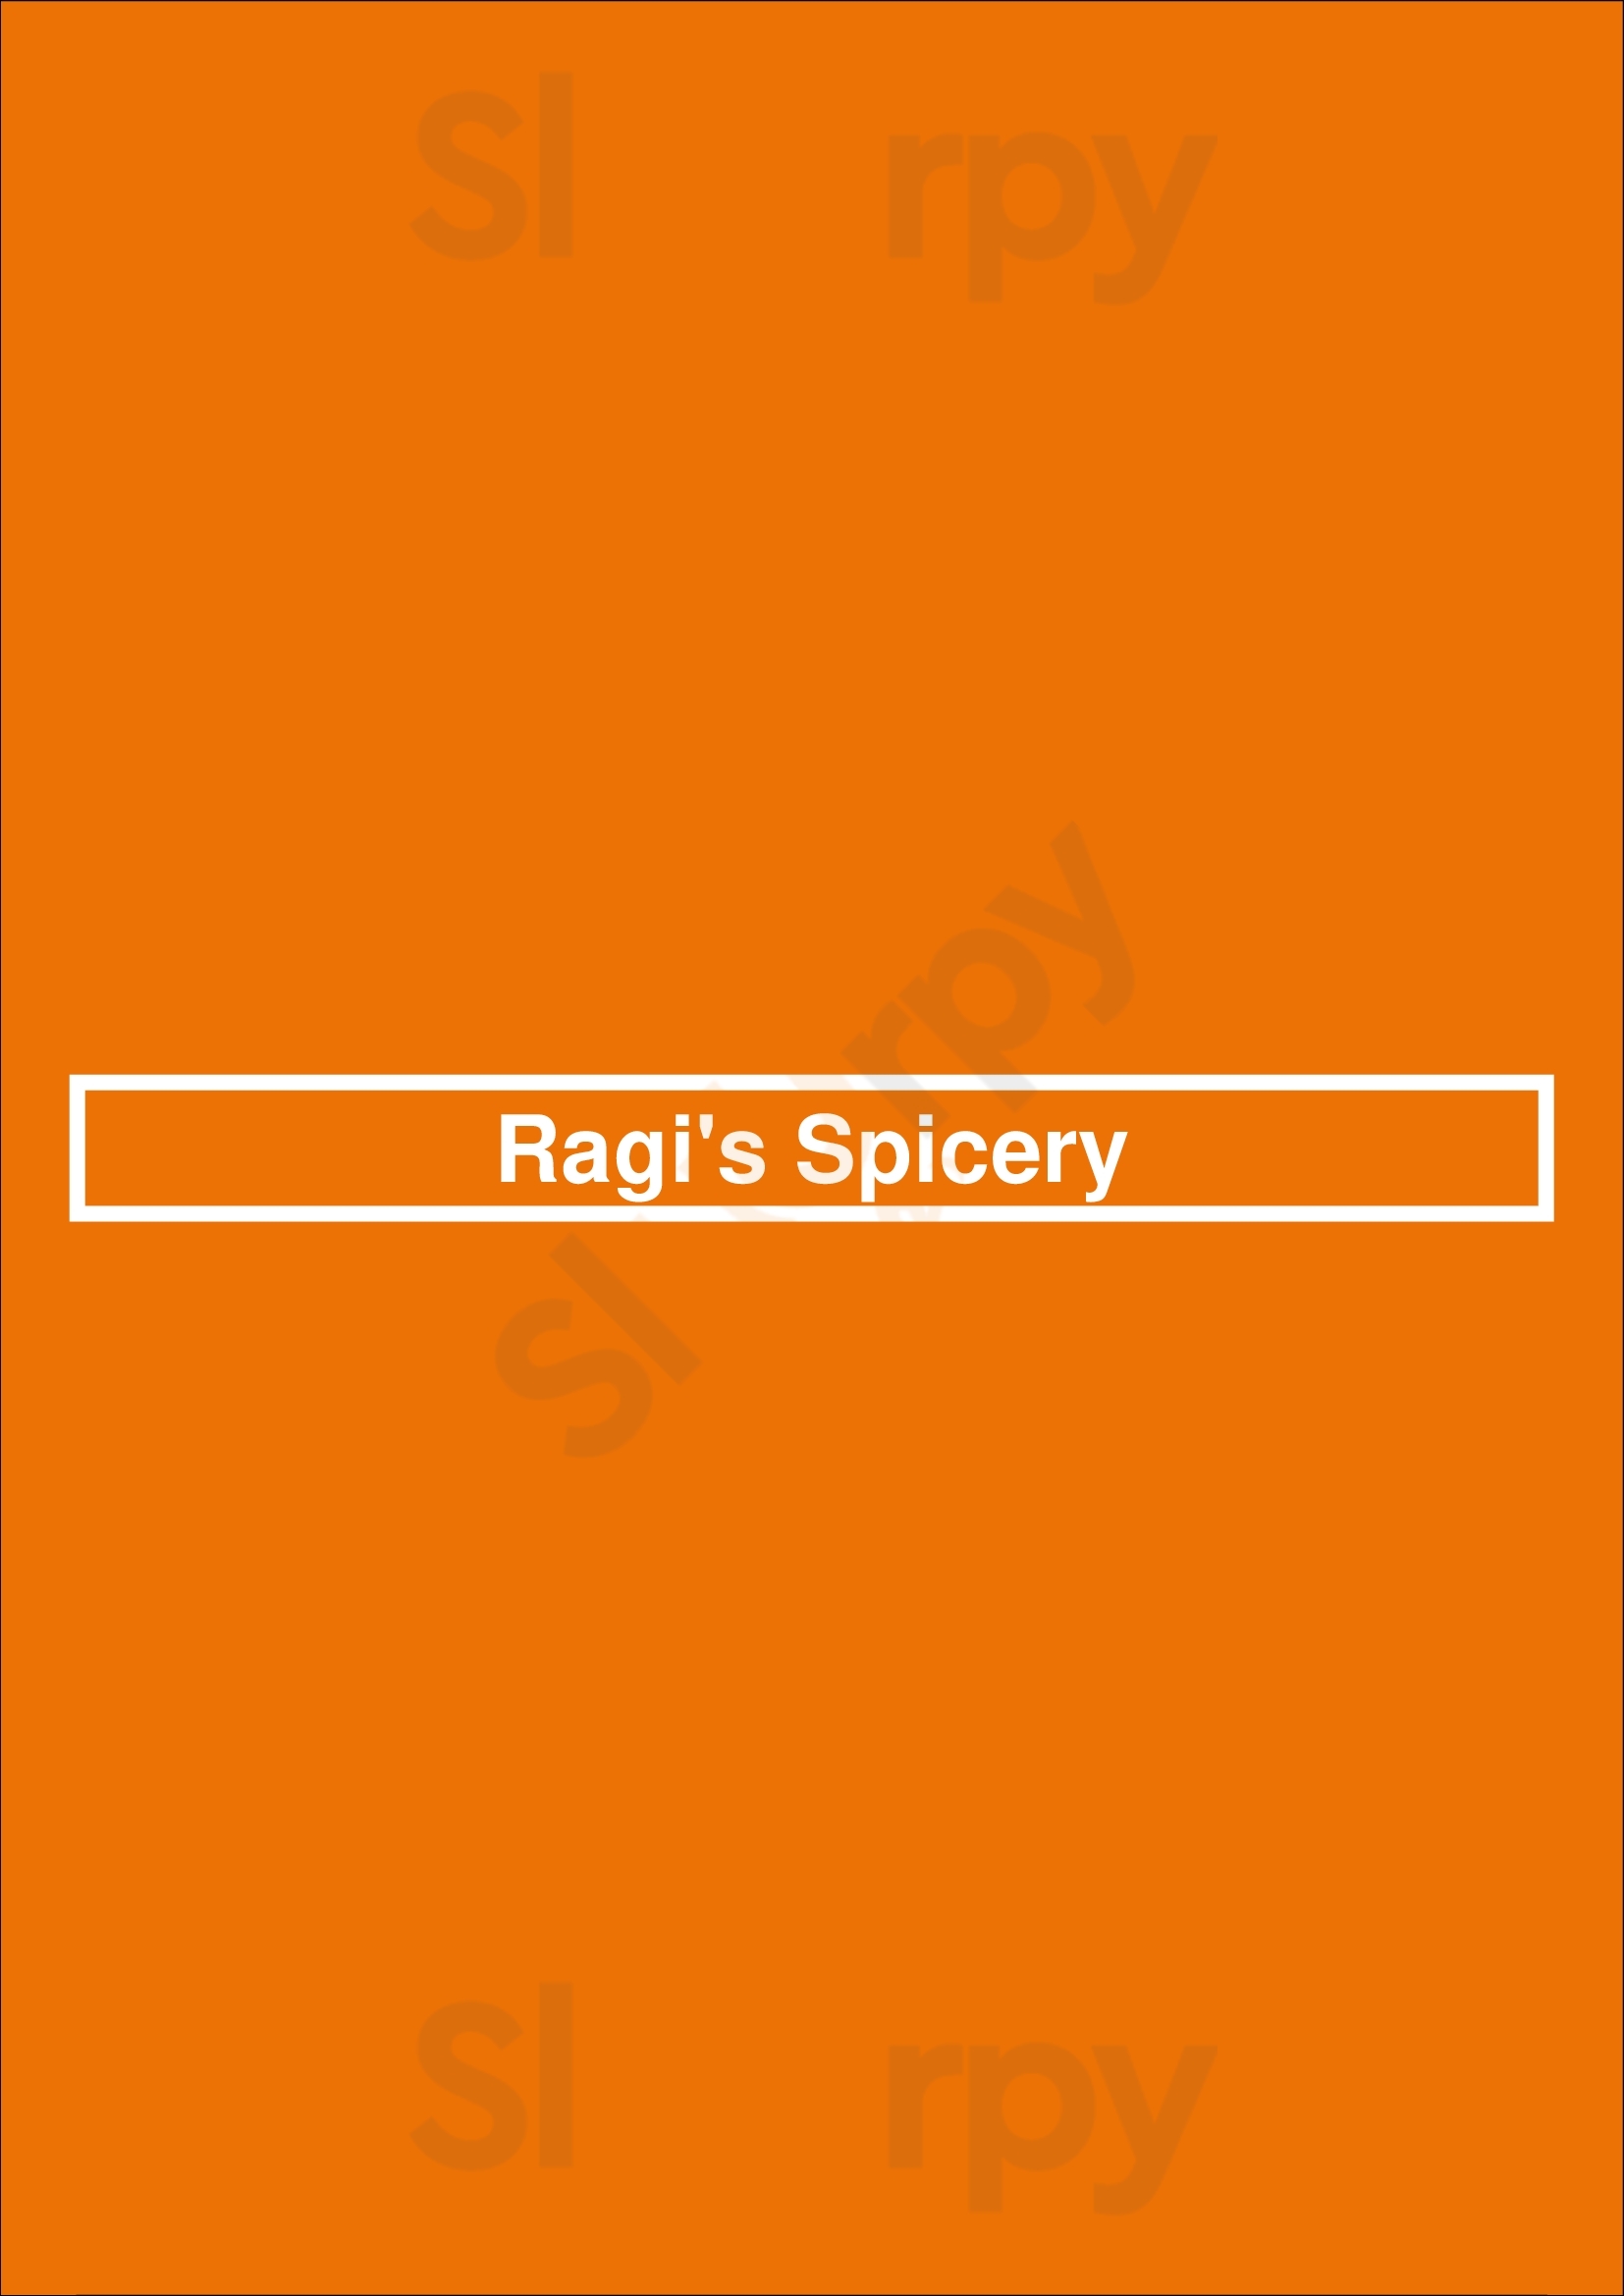 Ragi's Spicery Adelaide Menu - 1